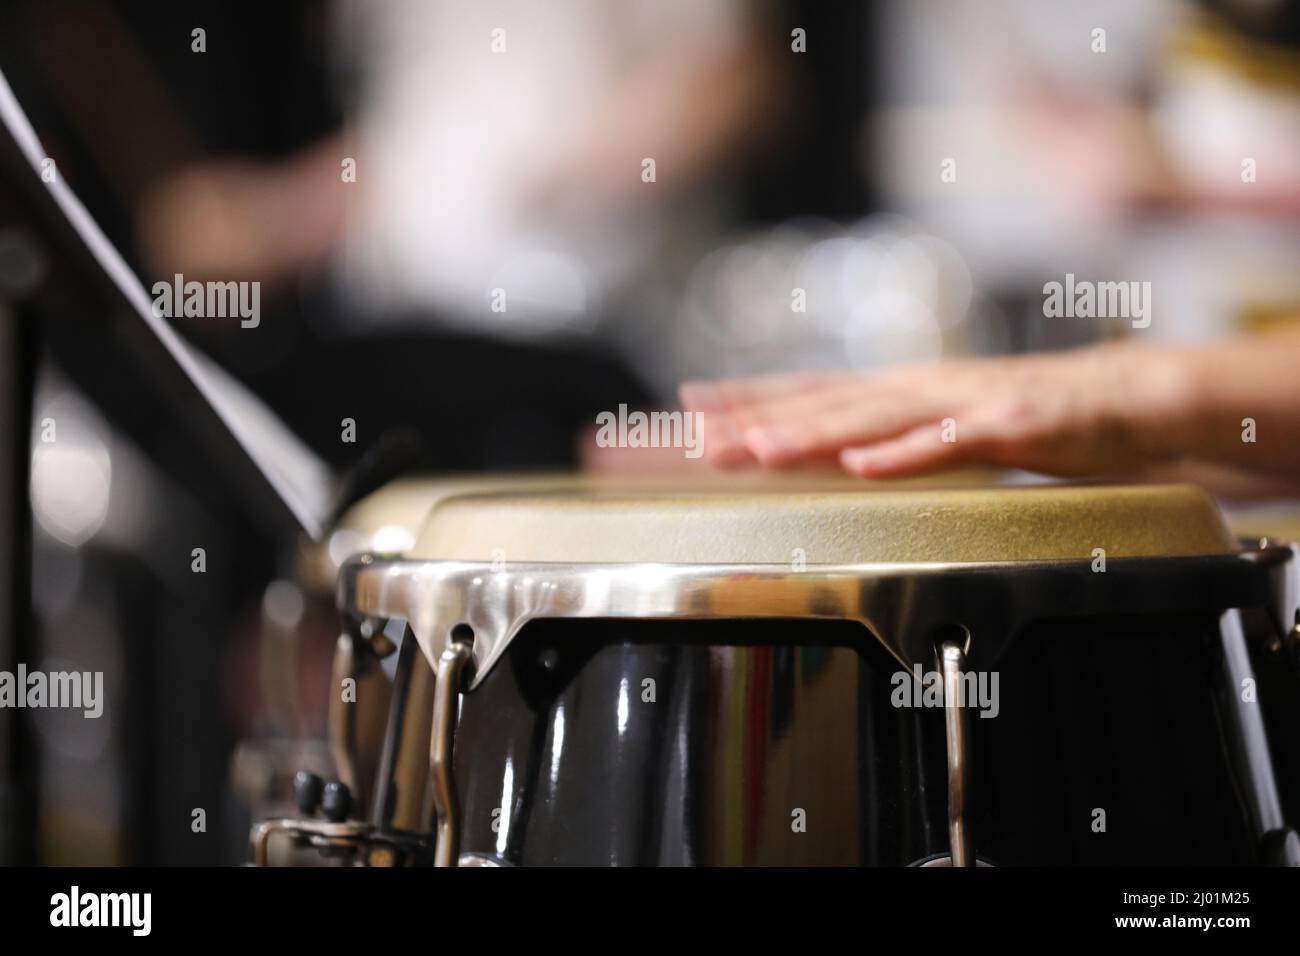 Un primer plano de manos moviéndose o en movimiento tocando los tambores de estilo congas o bongo en una sección de percusión de una banda o orquesta. Piel del tambor enfocada. Foto de stock